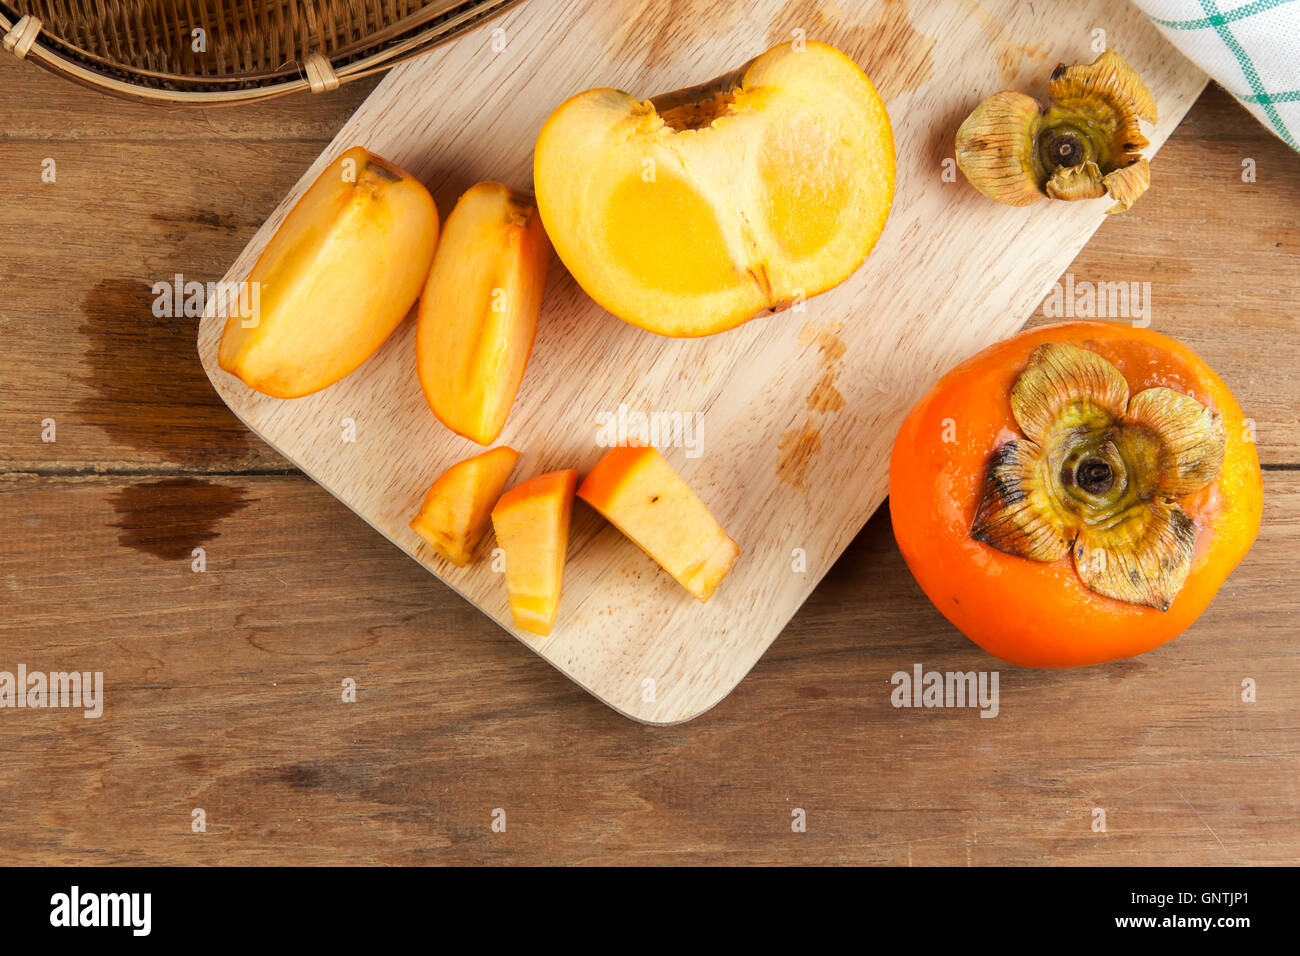 Couleur jaune kaki mûr de fruits sur table en bois fendu Banque D'Images